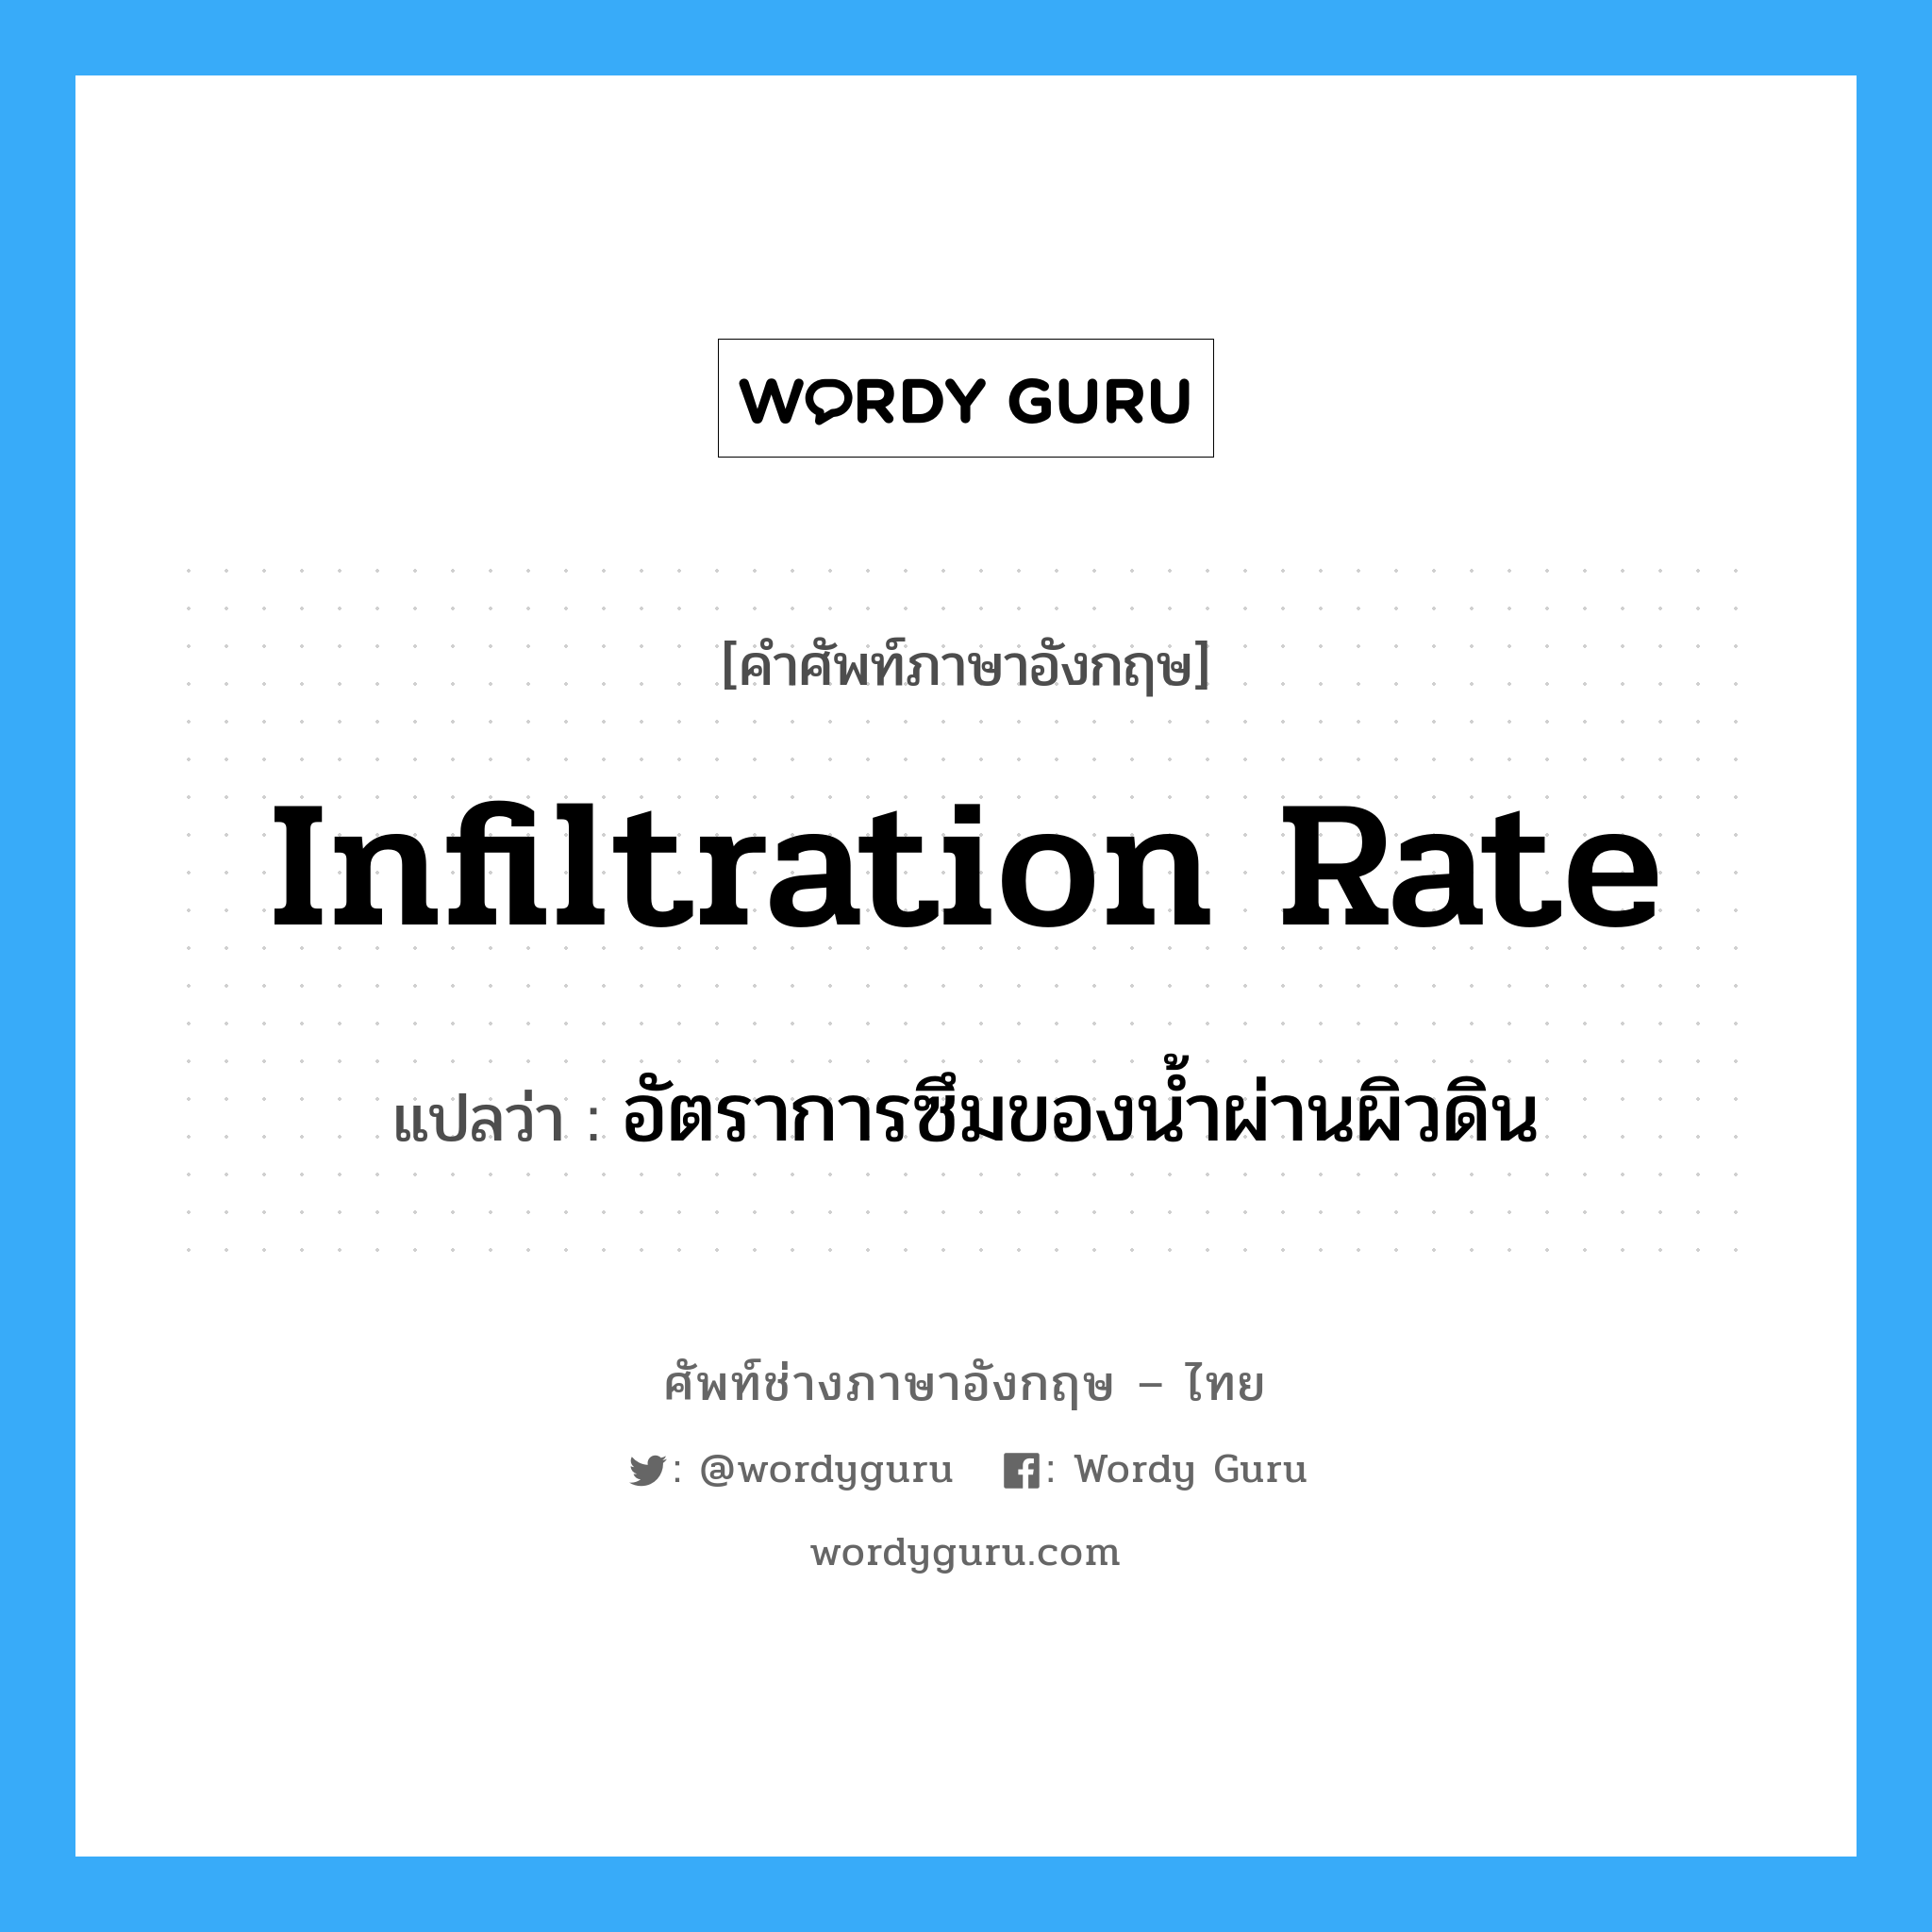 infiltration rate แปลว่า?, คำศัพท์ช่างภาษาอังกฤษ - ไทย infiltration rate คำศัพท์ภาษาอังกฤษ infiltration rate แปลว่า อัตราการซึมของน้ำผ่านผิวดิน